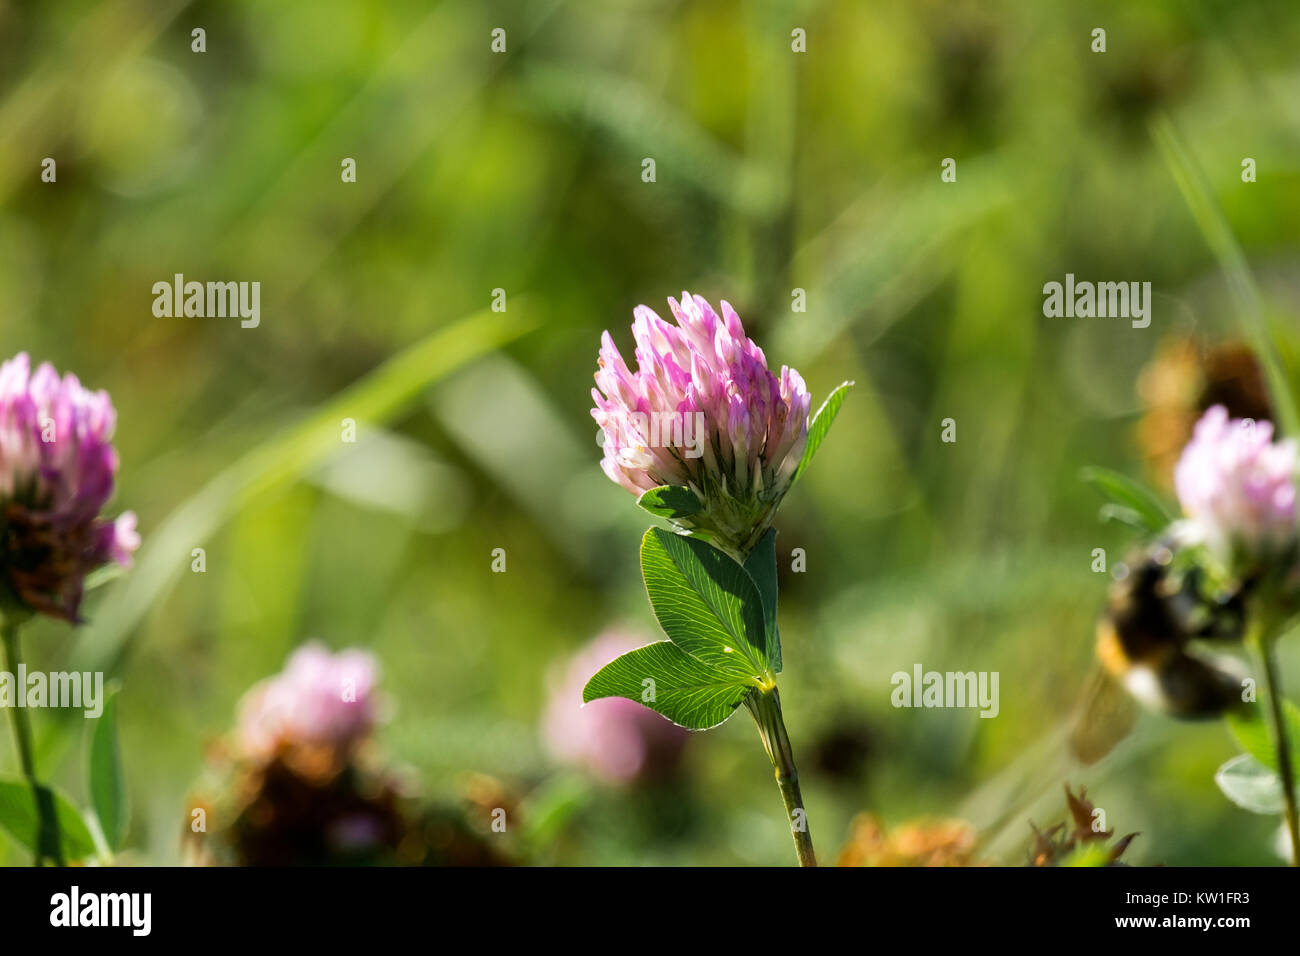 Violet-white flower of fragrant clover (Trifolium pratense) Stock Photo